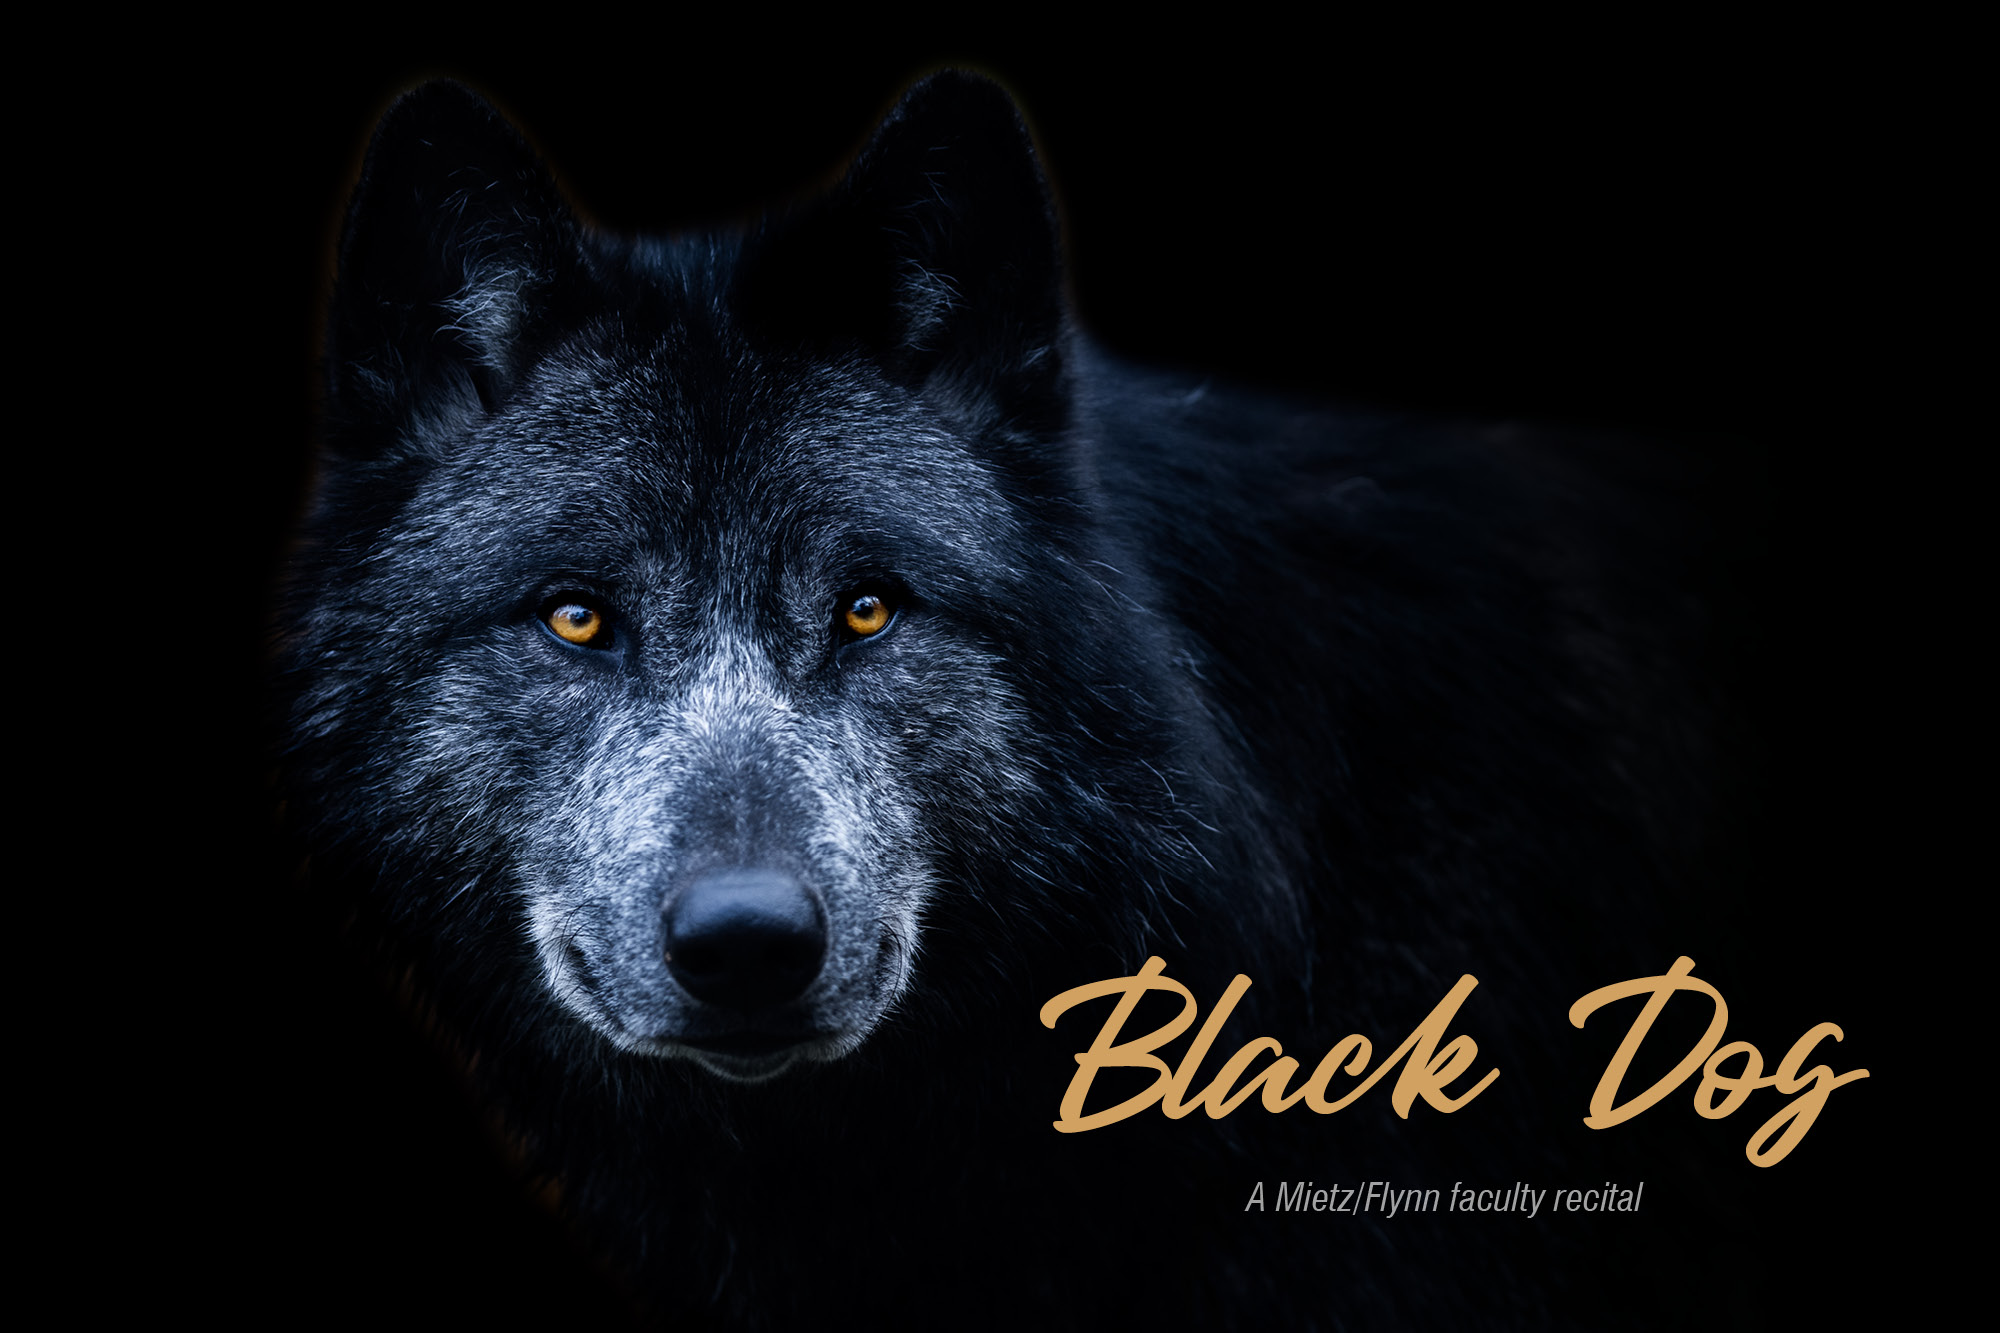 Image for "Black Dog" recital.